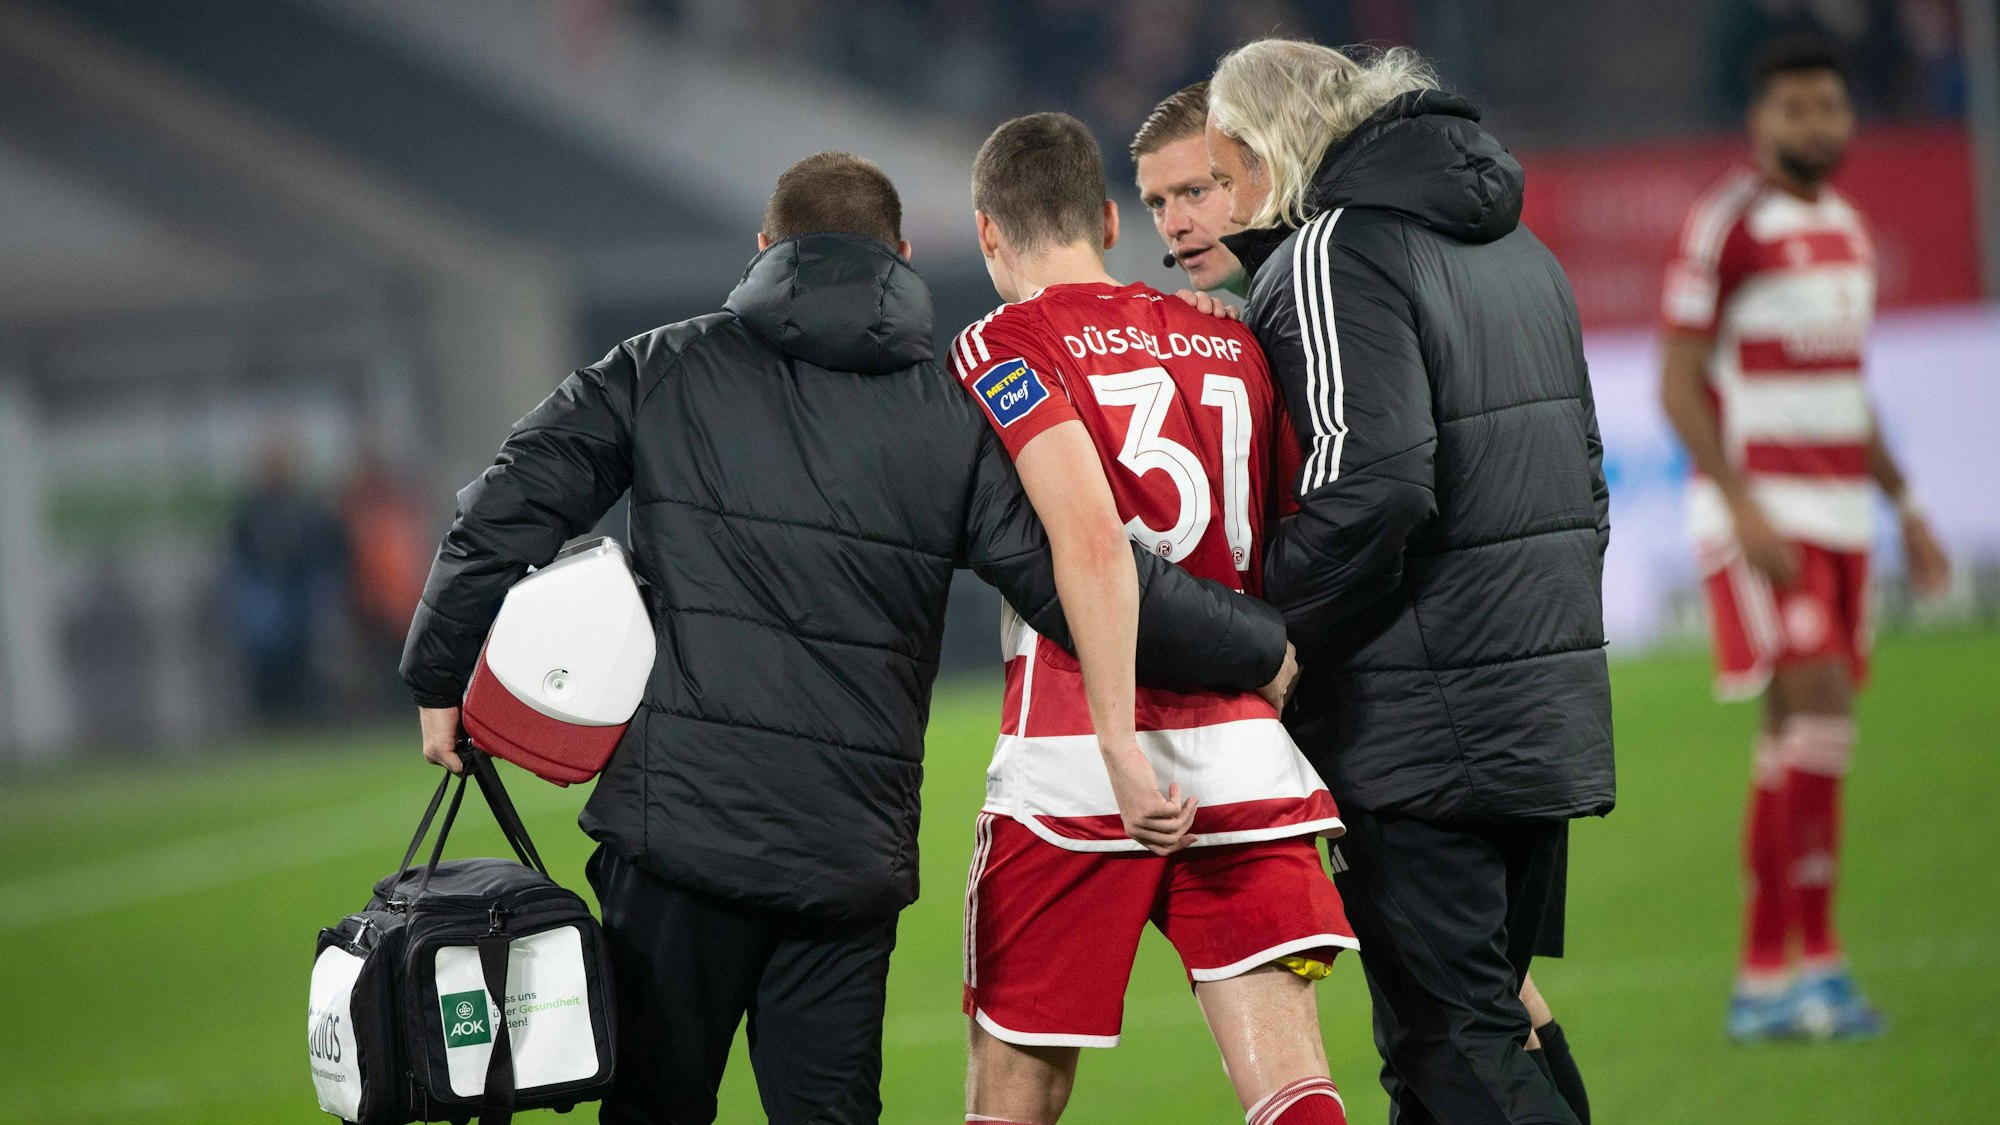 Fortuna Düsseldorfs Marcel Sobottka wird bei seiner Auswechslung im Spiel gegen den FC Schalke 04 von Team-Arzt Ulf Blecker gestützt.